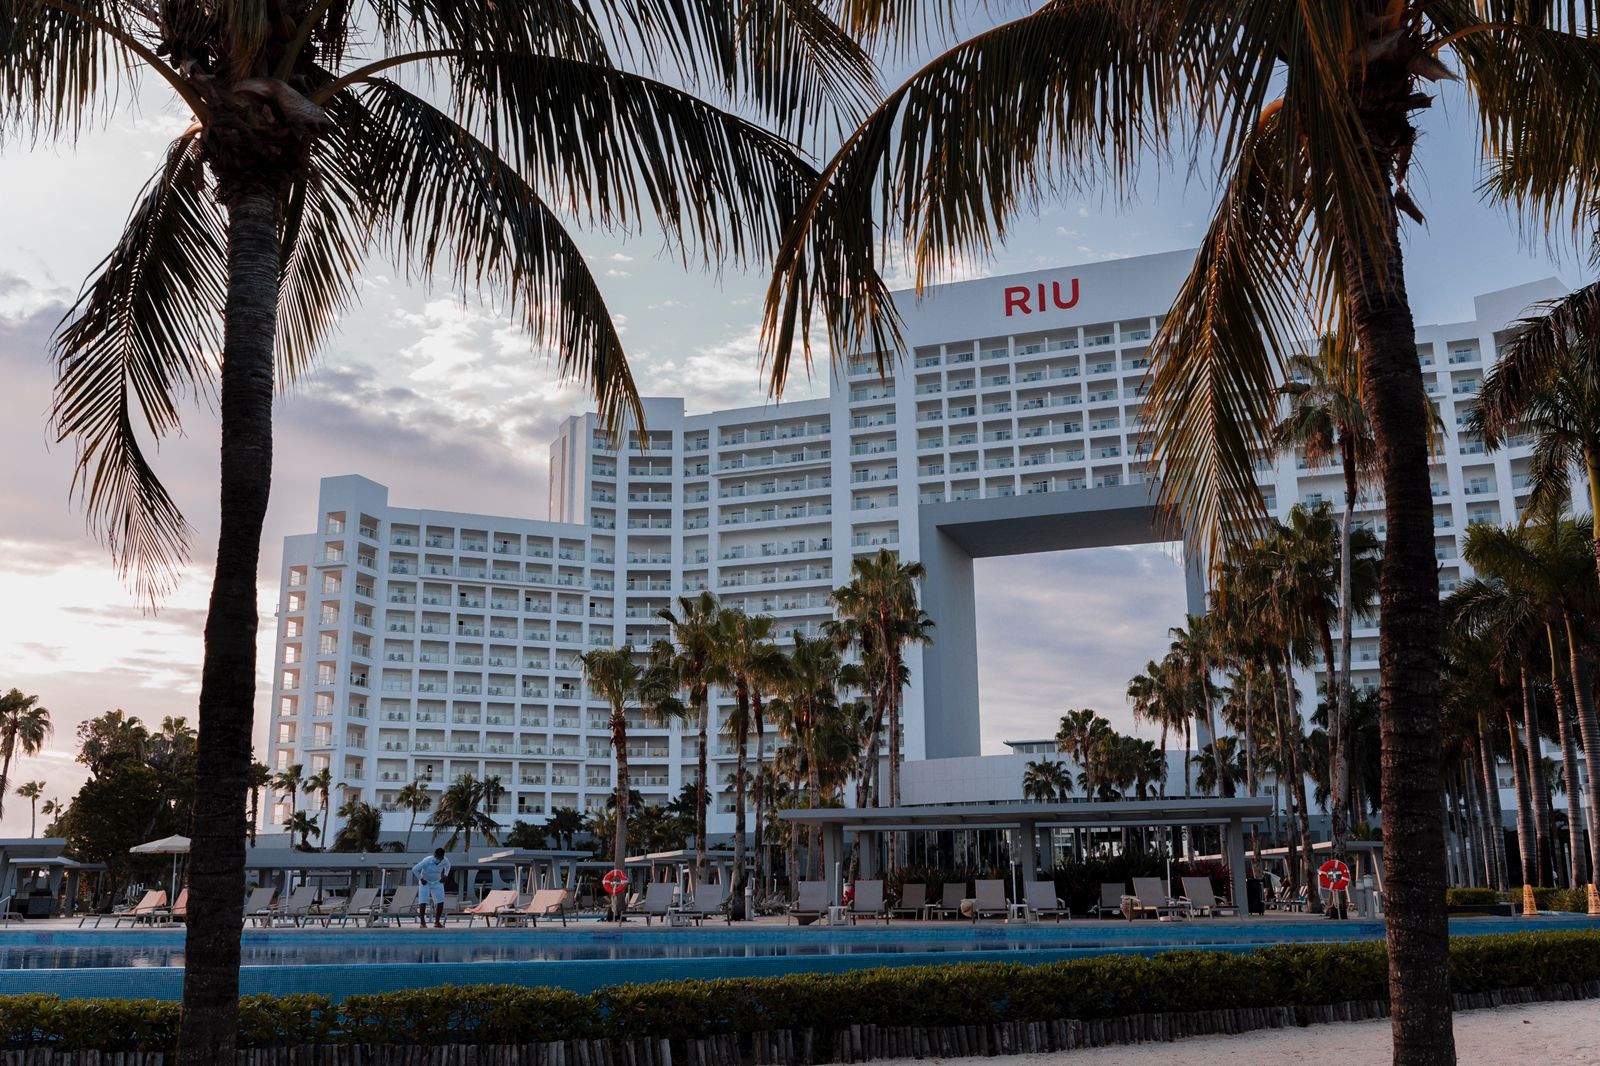 Riu Palace Peninsula: Un hotel ícono de Cancún